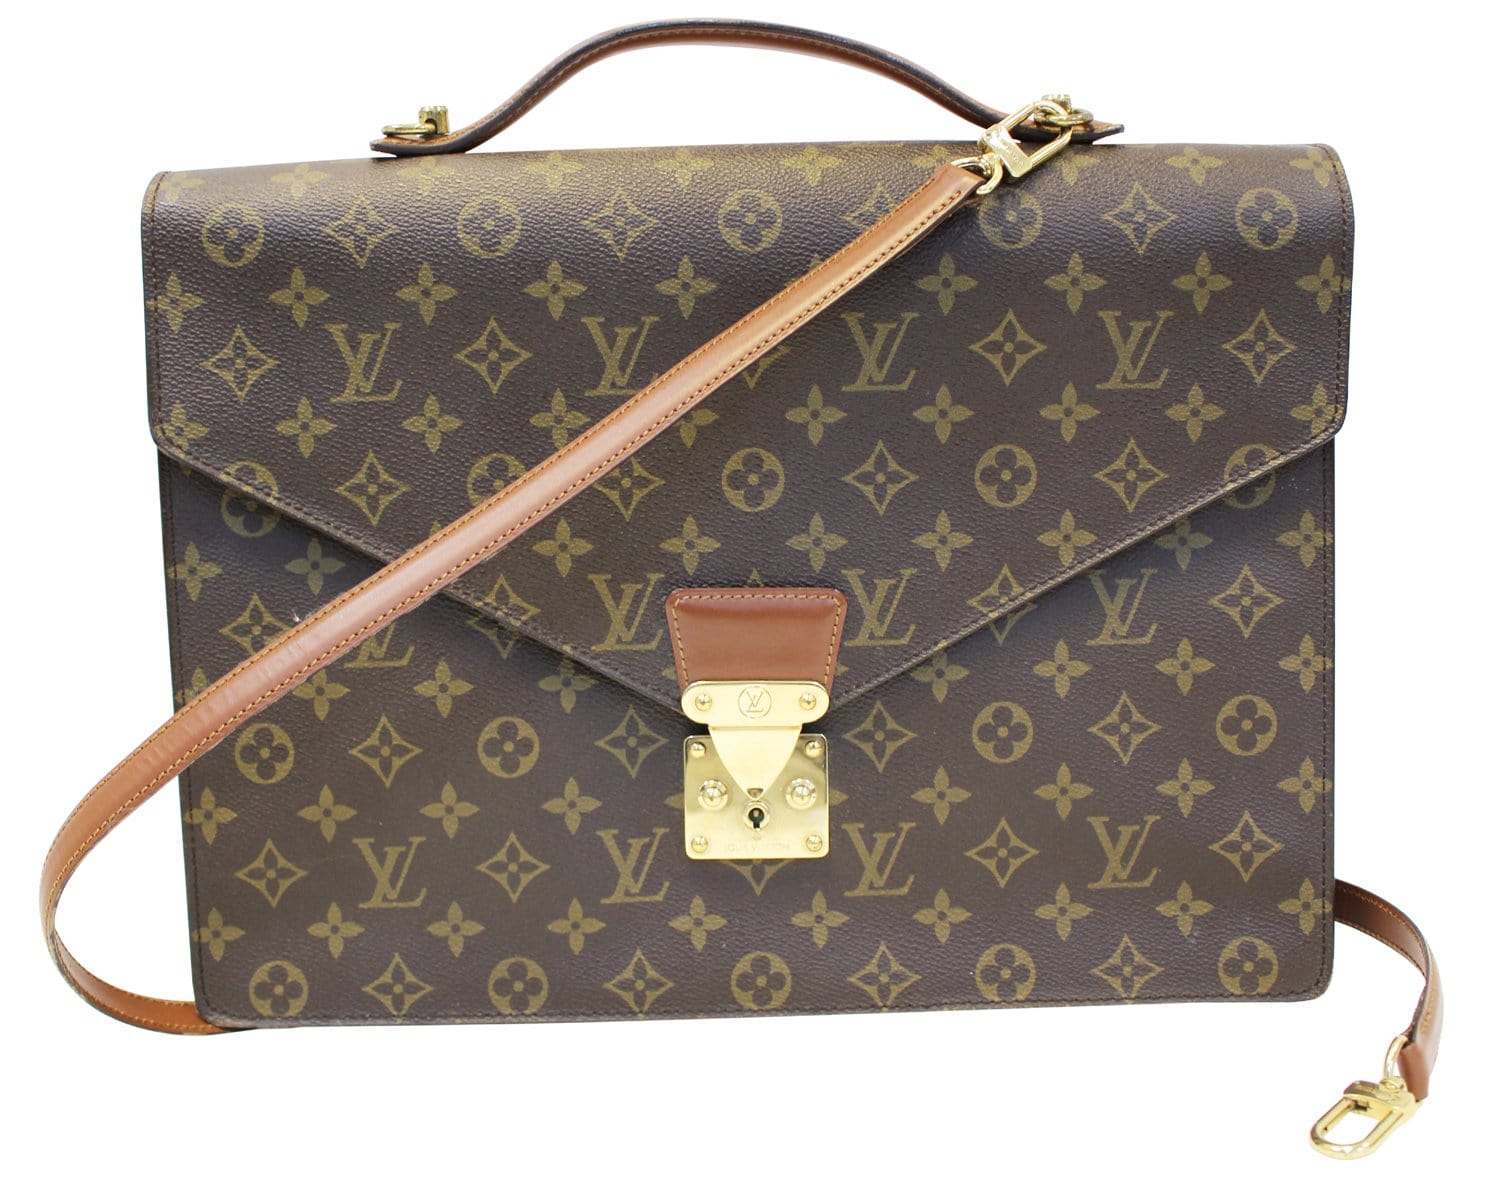 Louis Vuitton Lv Monogram Briefcase Bag